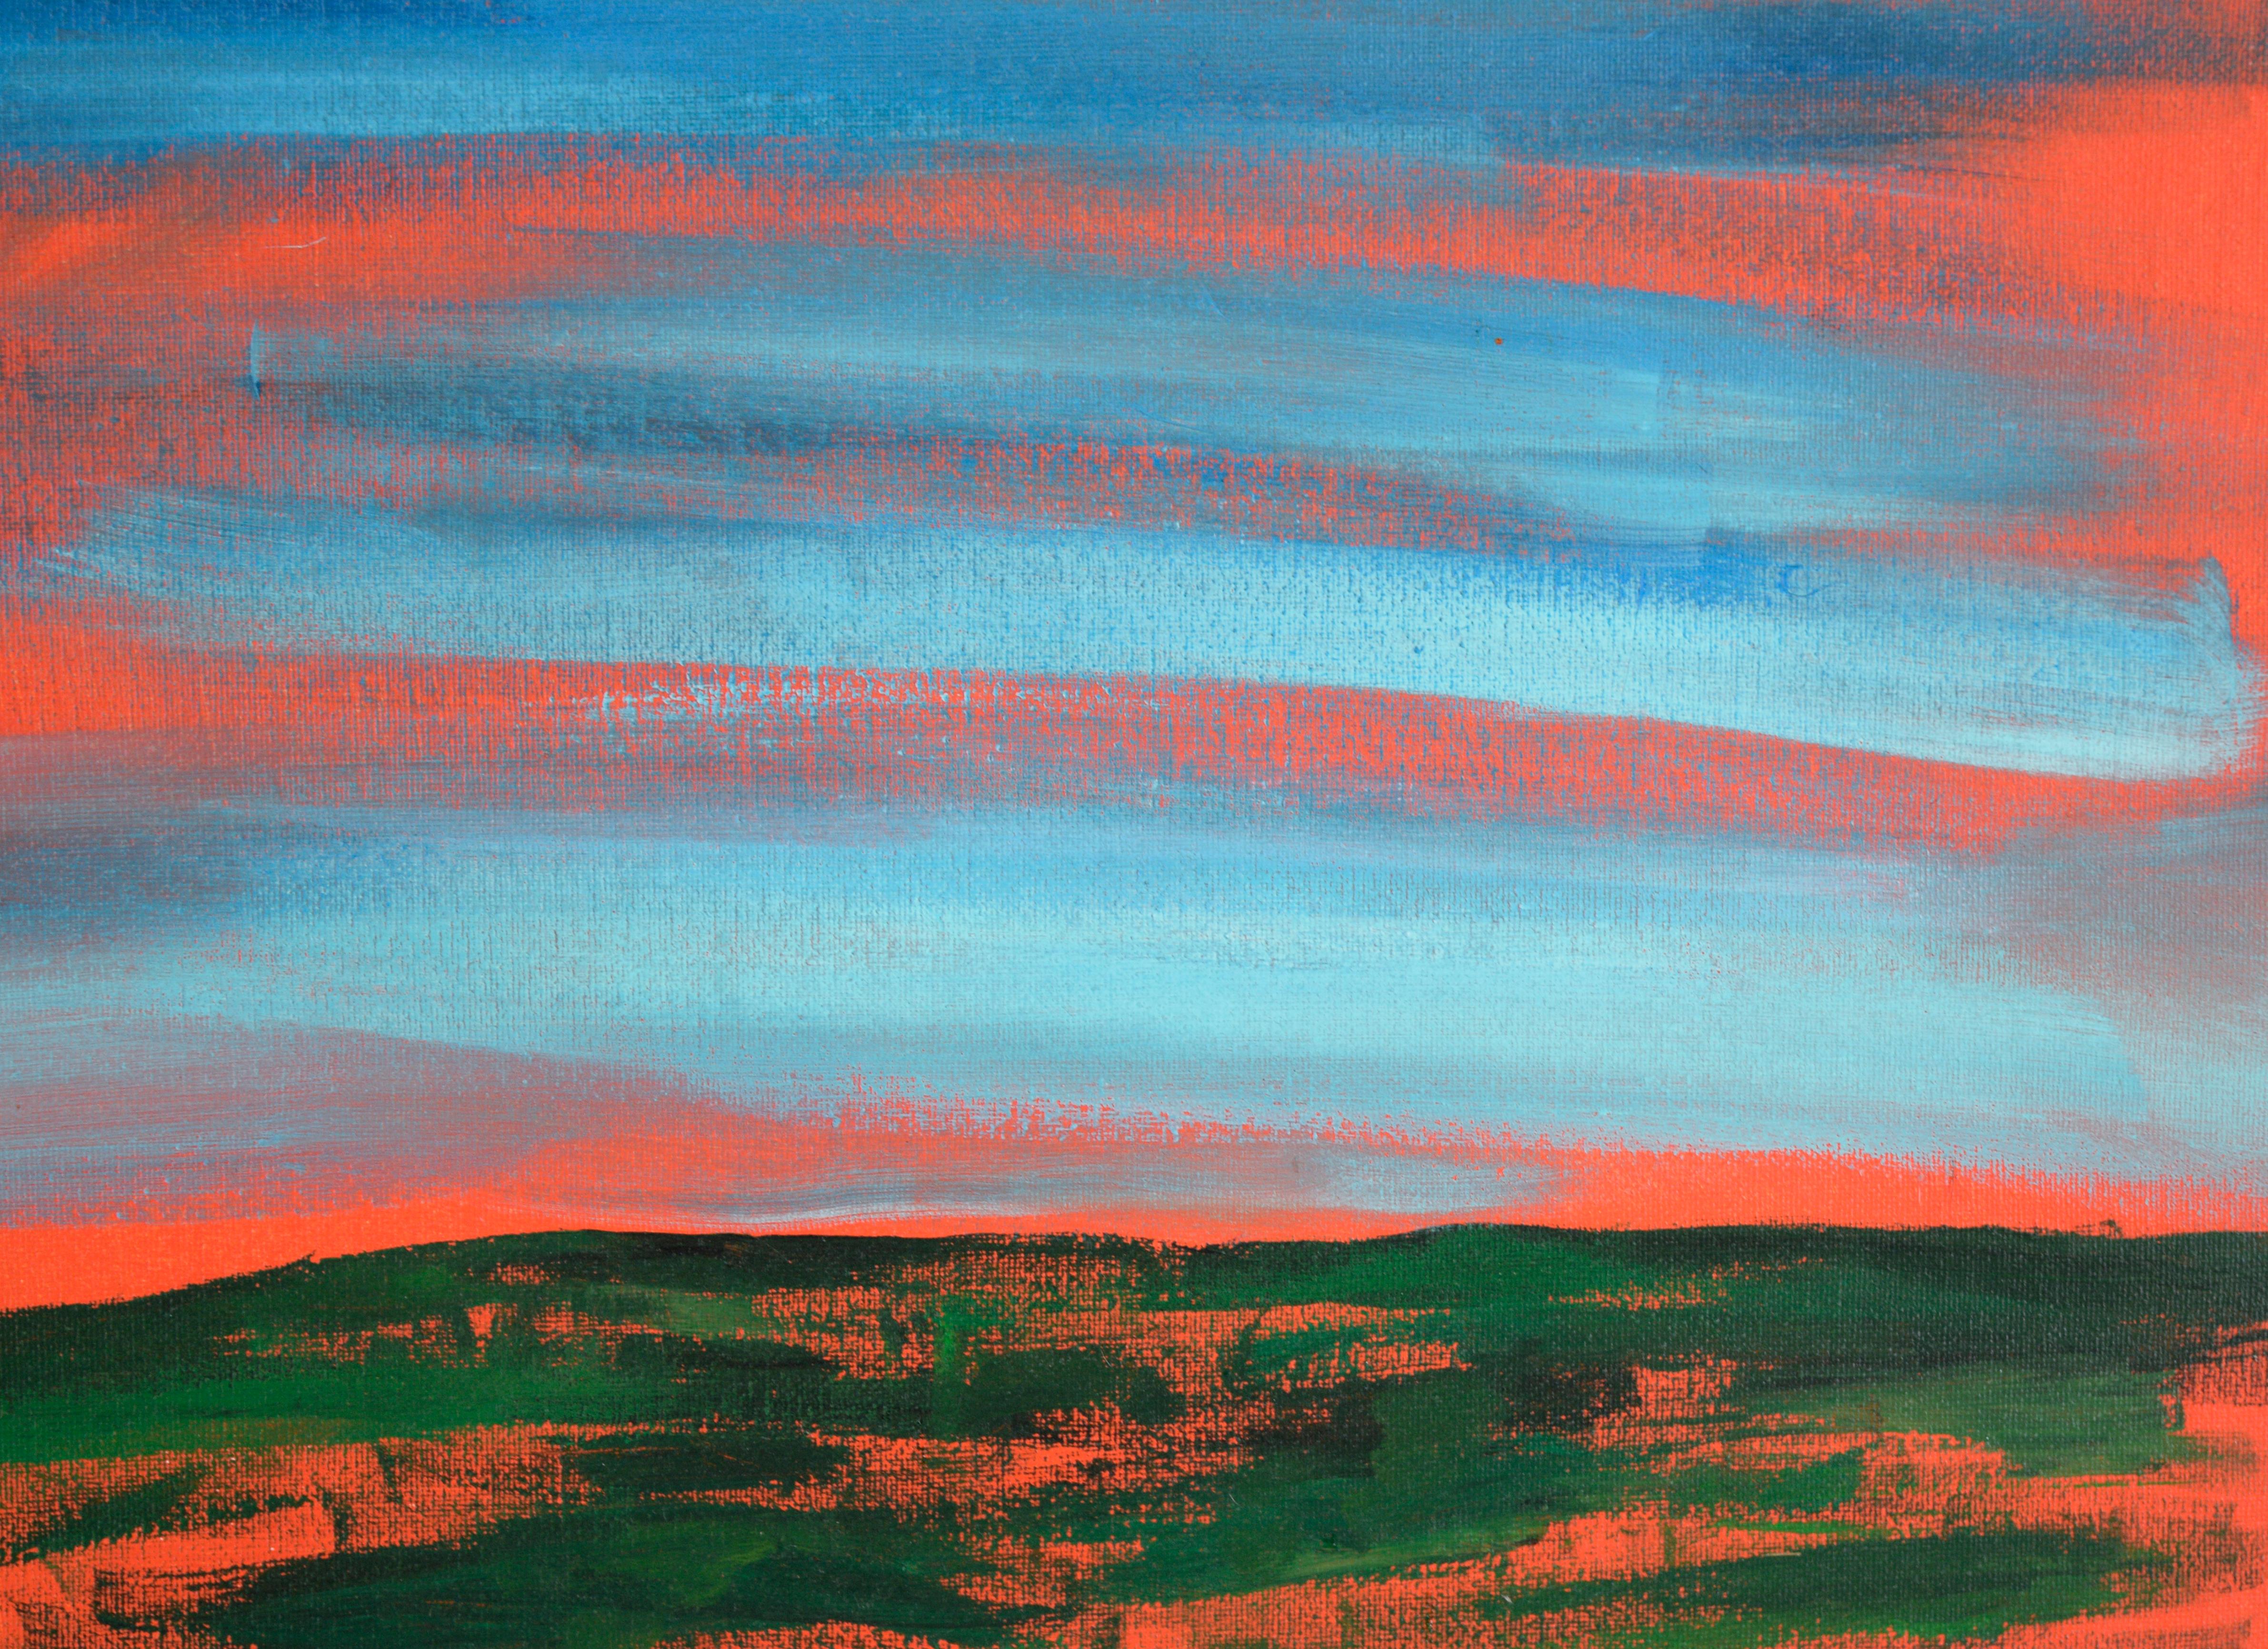 Paysage abstrait de l'artiste californien Devon Brockopp-Hammer (américain, né en 1986). La sous-couche orange a été laissée transparaître à travers la composition, ajoutant un effet lumineux à la pièce. La phrase 